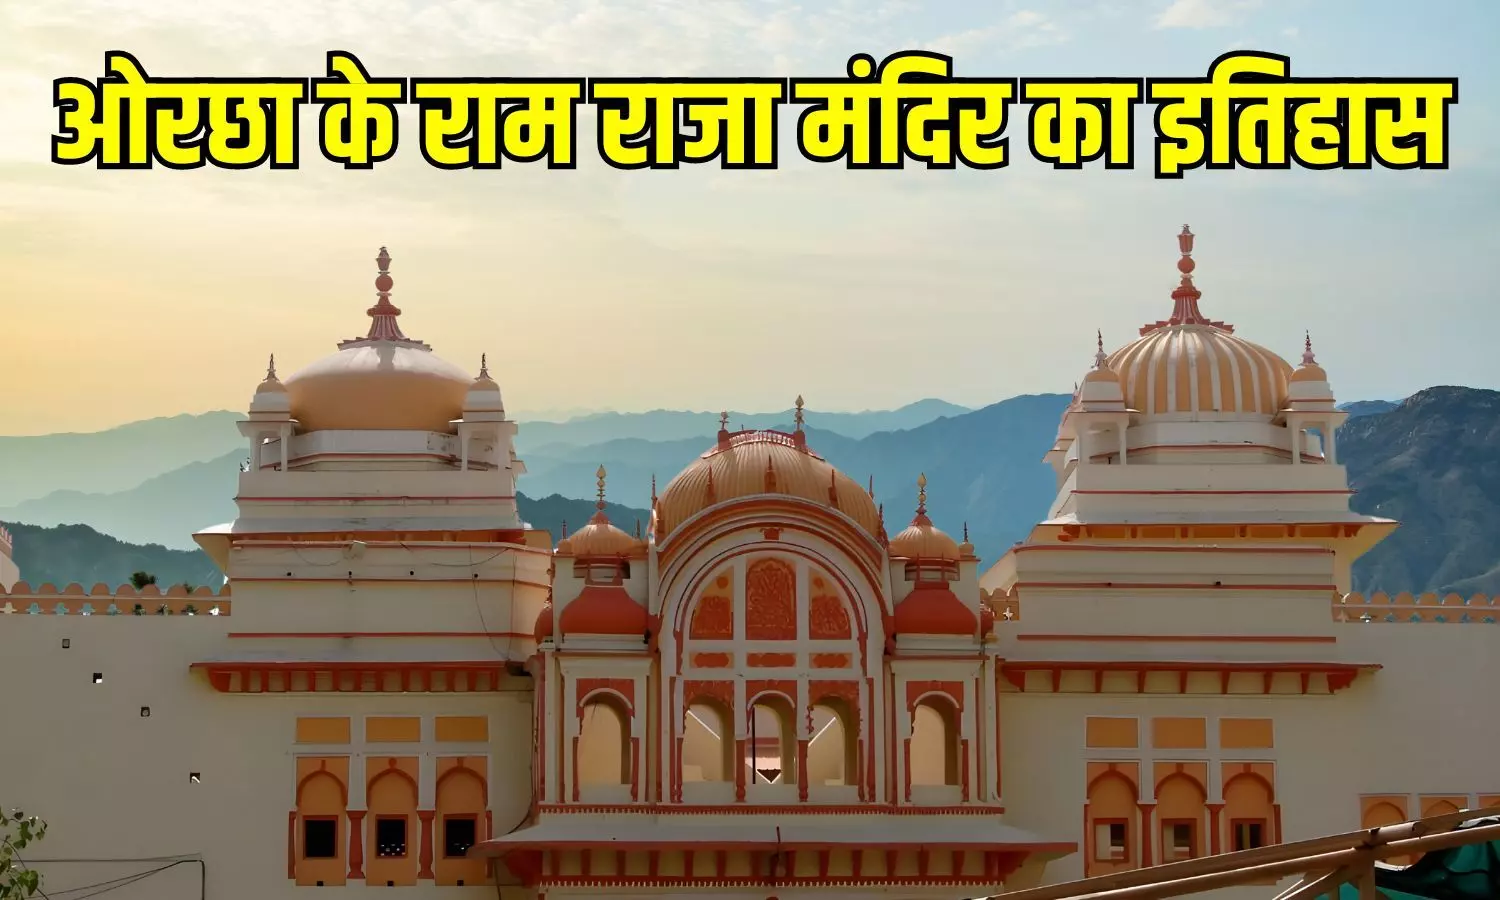 Orchha Raja Ram Temple: मध्य प्रदेश के ओरछा में स्थित राजाराम मंदिर का क्या है इतिहास, पढ़ें विस्तार से...